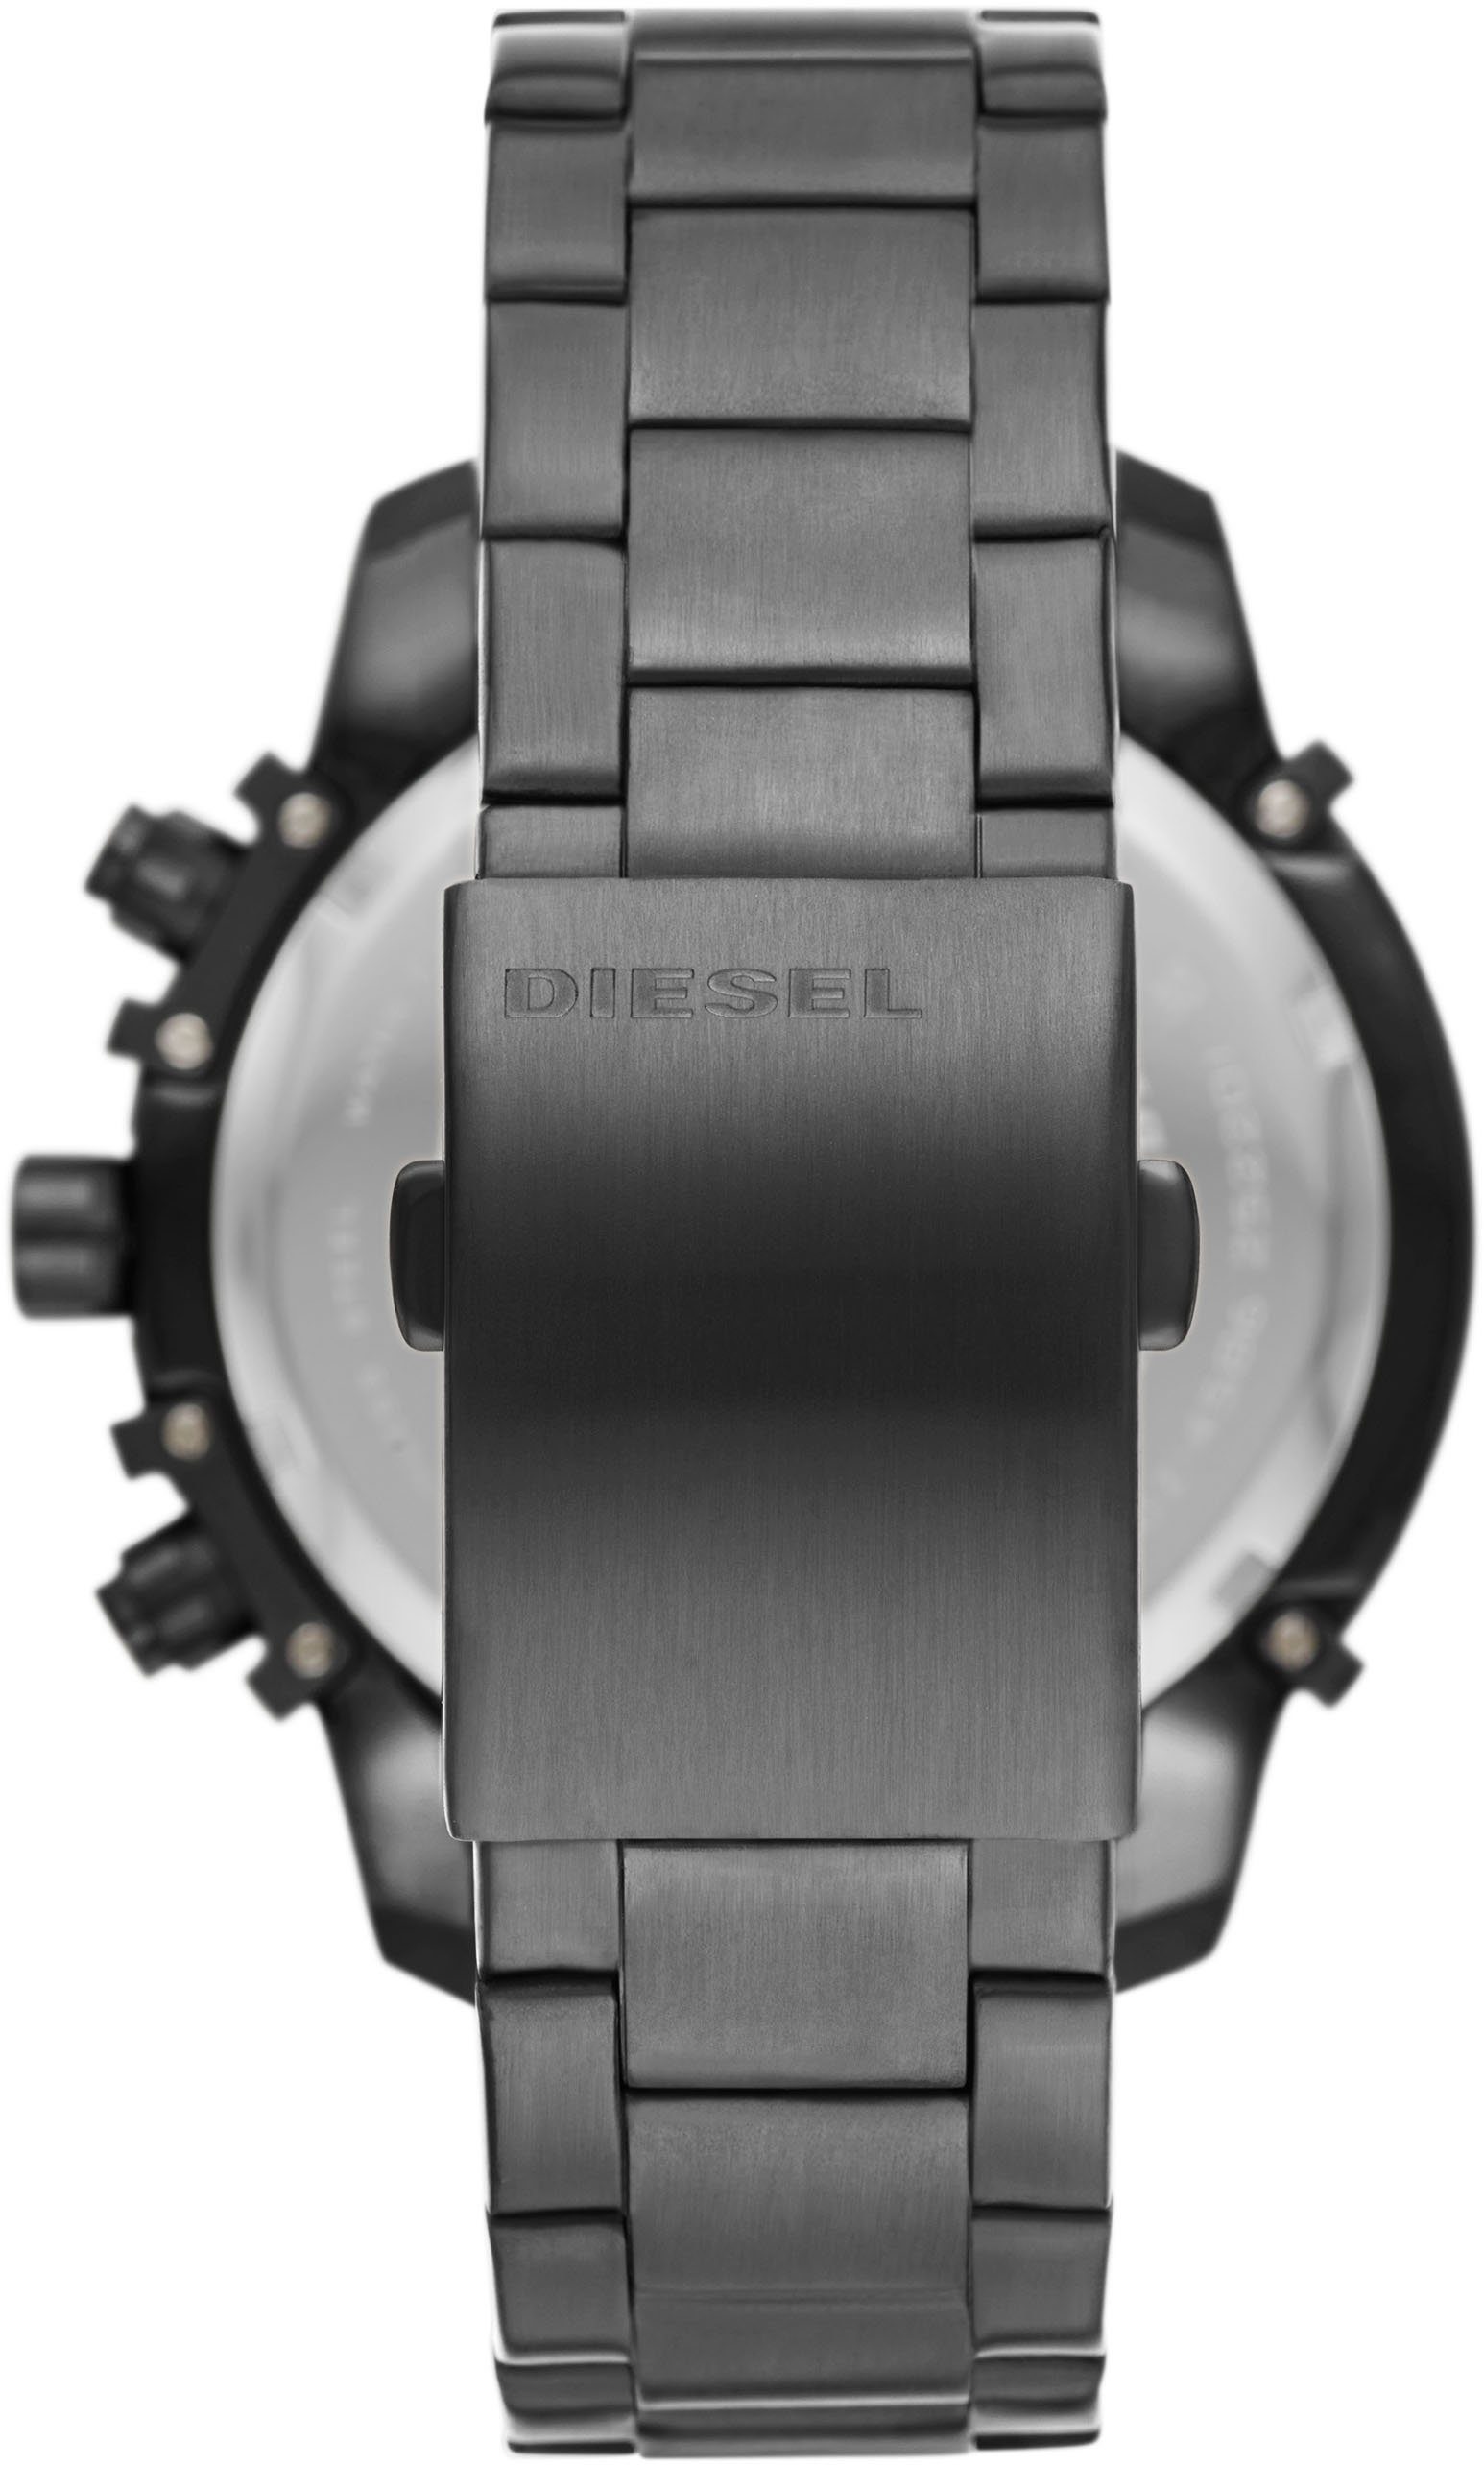 GRIFFED, DZ4586 Chronograph Diesel